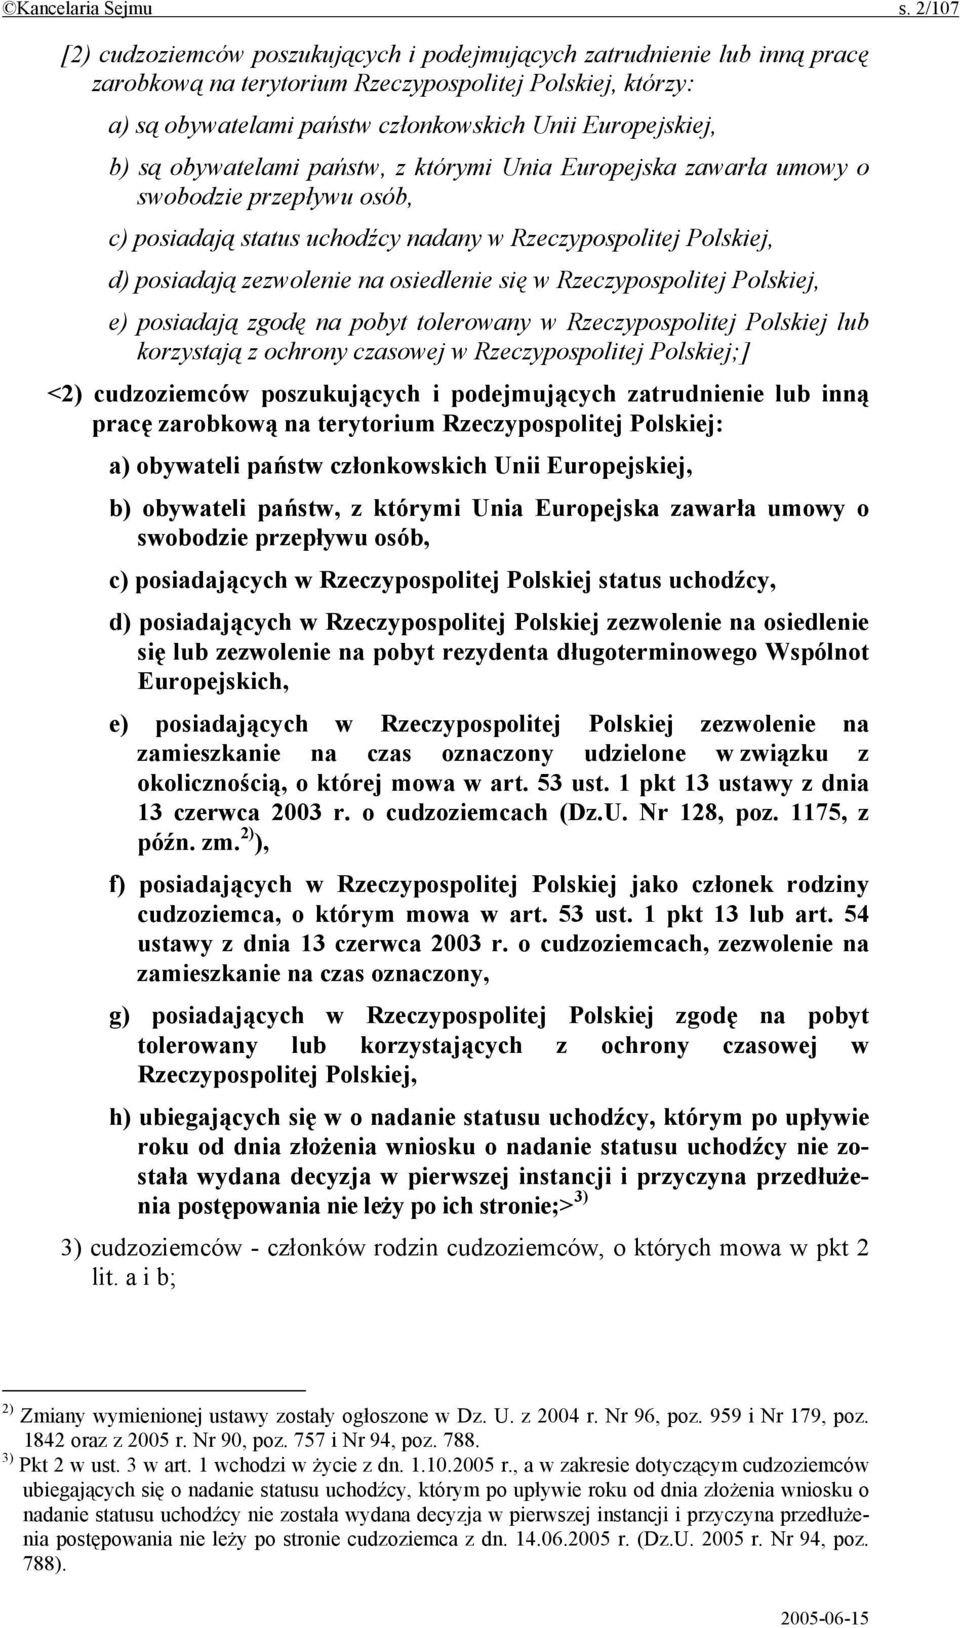 b) są obywatelami państw, z którymi Unia Europejska zawarła umowy o swobodzie przepływu osób, c) posiadają status uchodźcy nadany w Rzeczypospolitej Polskiej, d) posiadają zezwolenie na osiedlenie